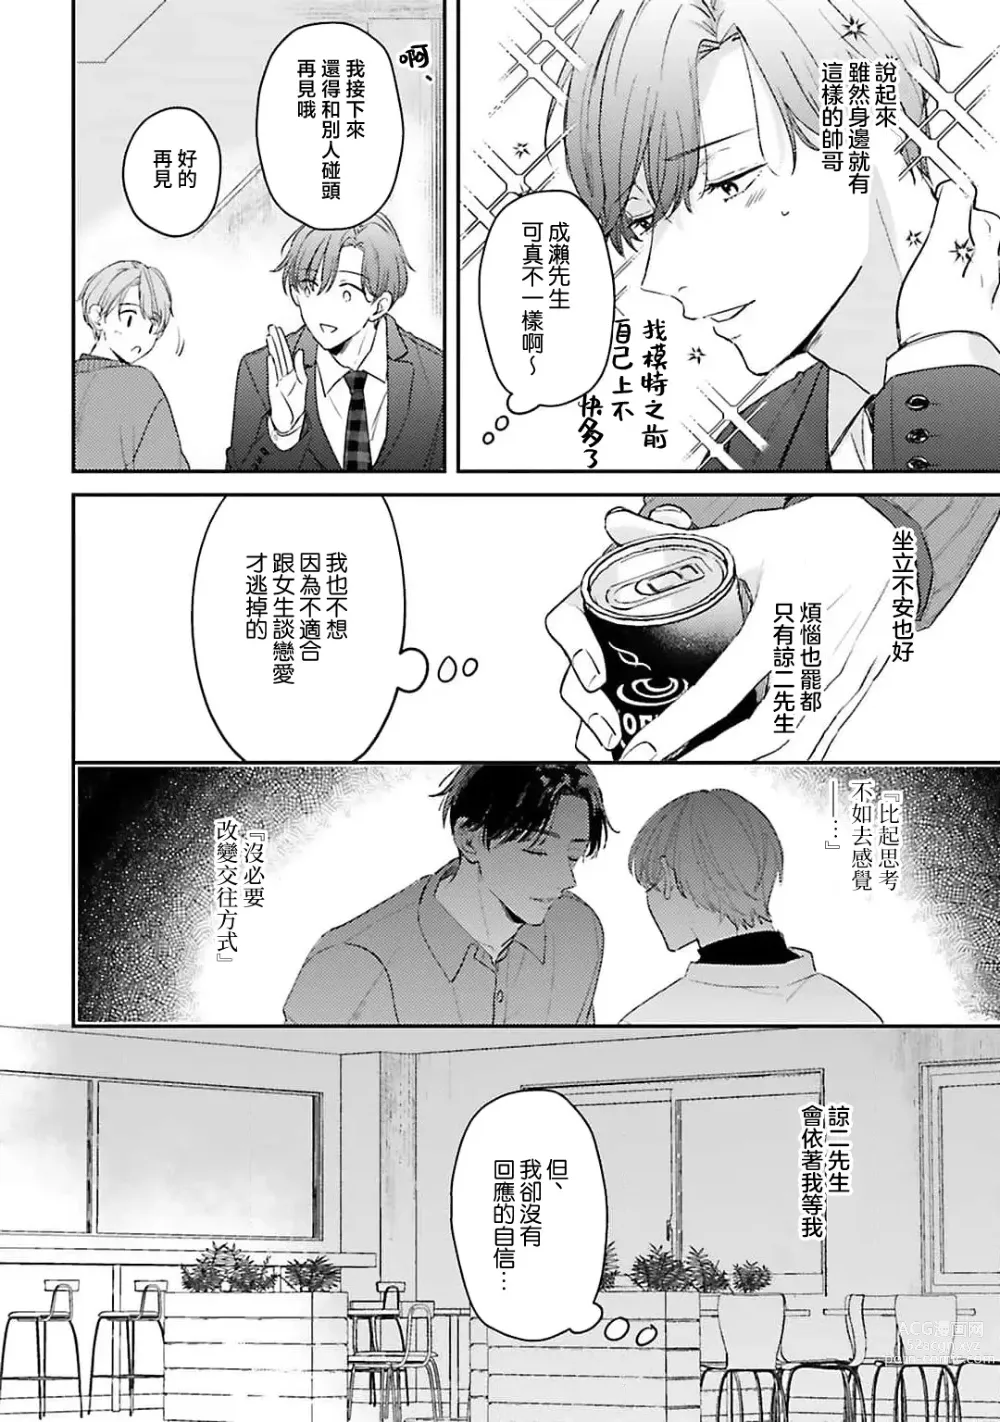 Page 99 of manga 绽放的恋爱皆为醉与甜1